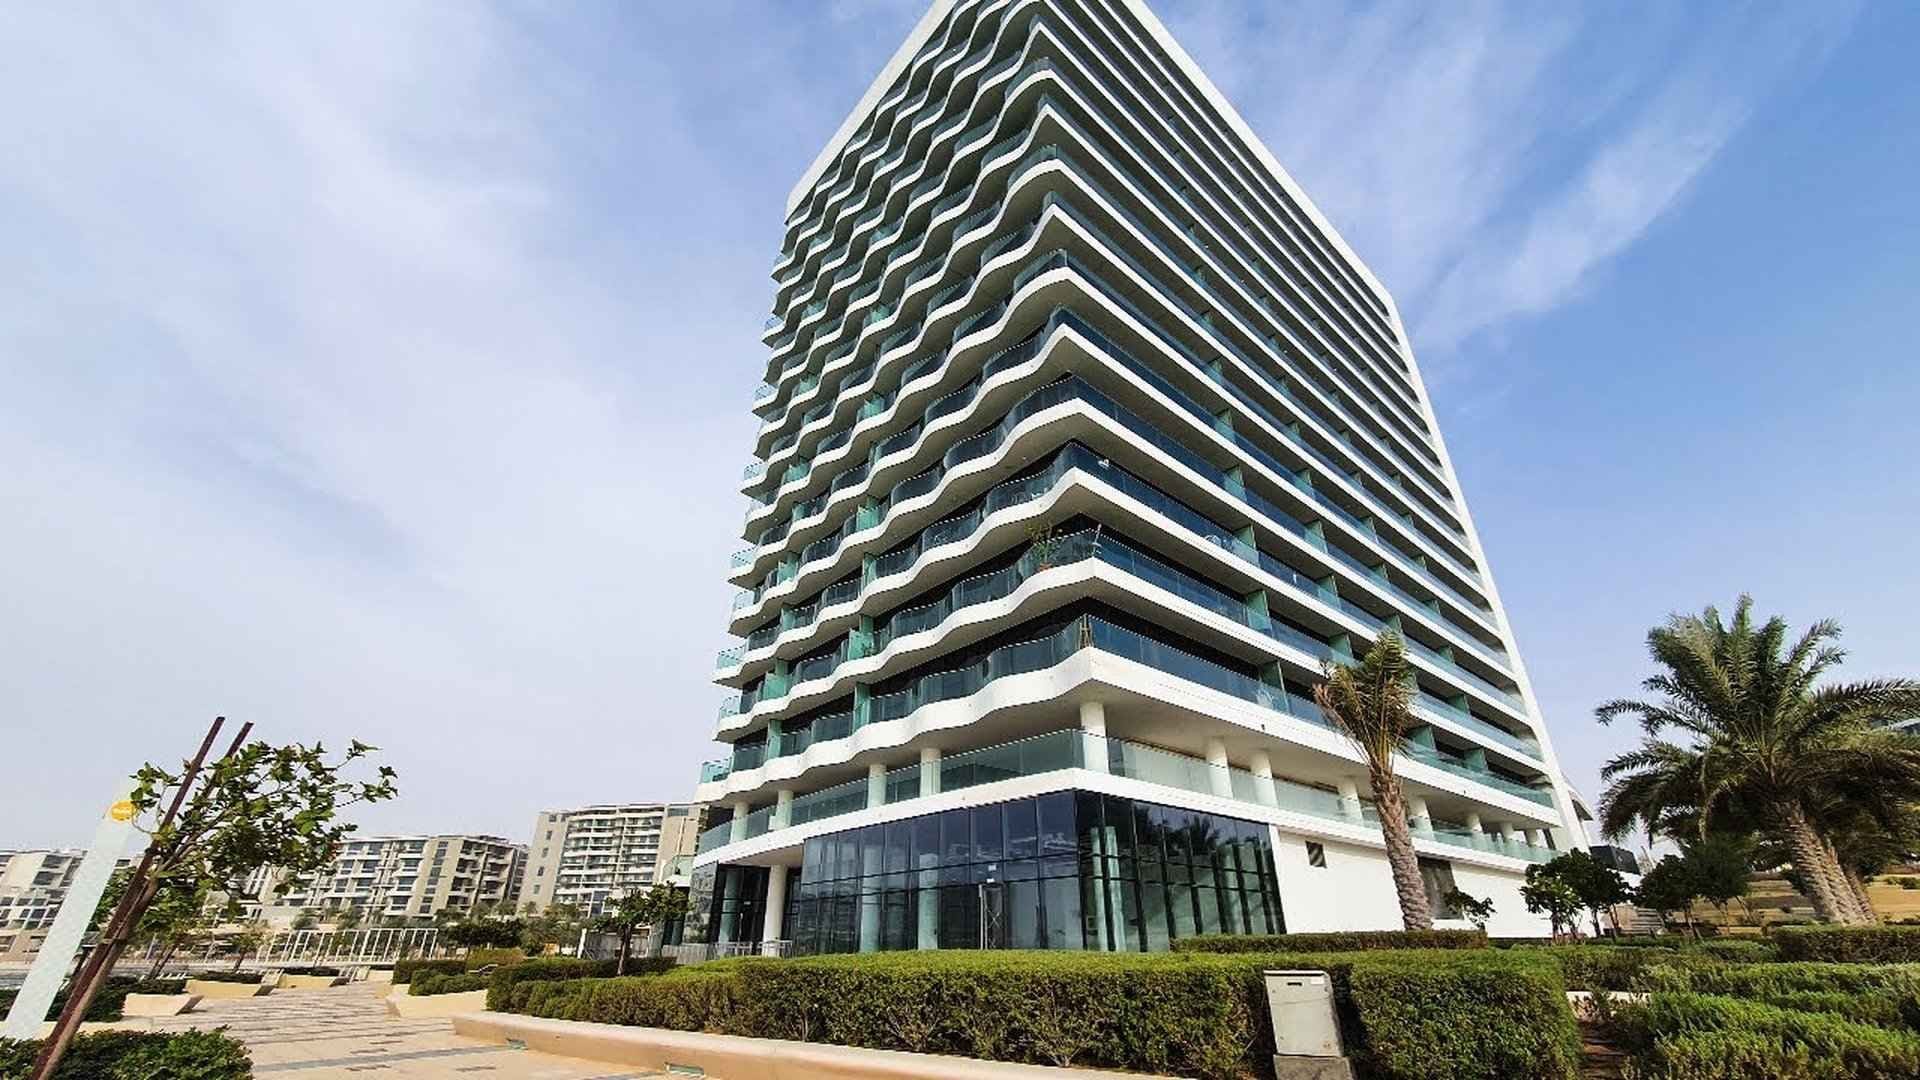 AL NASEEM TOWER by Aldar Properties in Al Raha Beach, Abu Dhabi, UAE